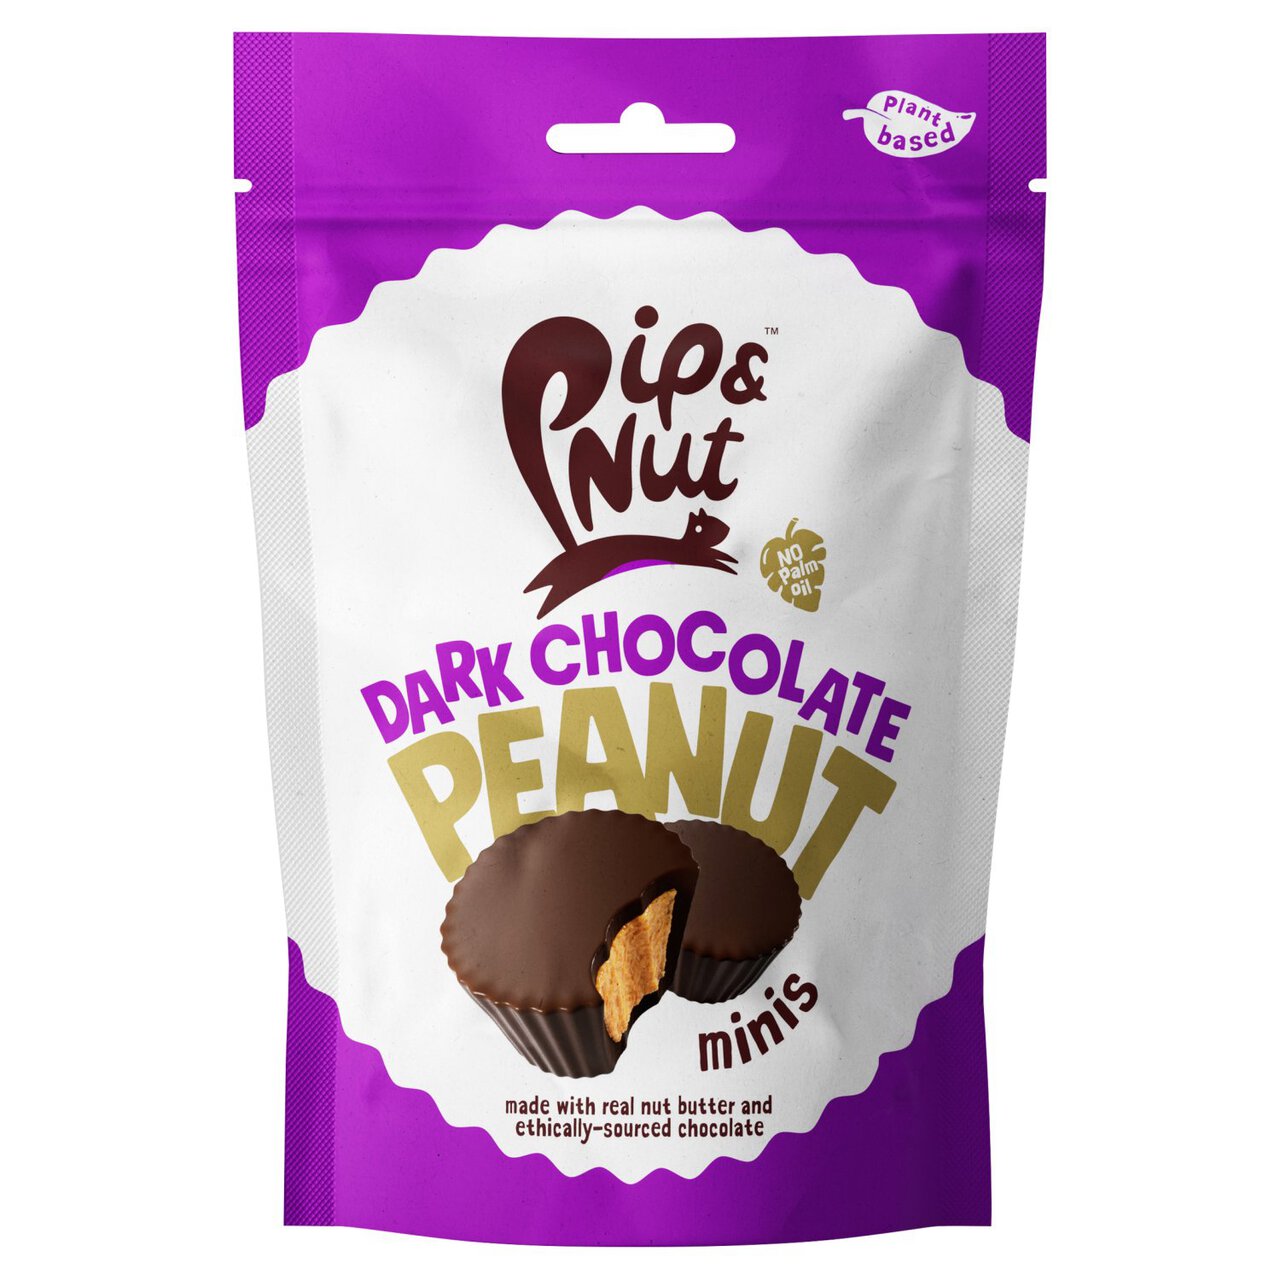 Pip & Nut Mini Dark Chocolate Peanut Butter Cups 88g